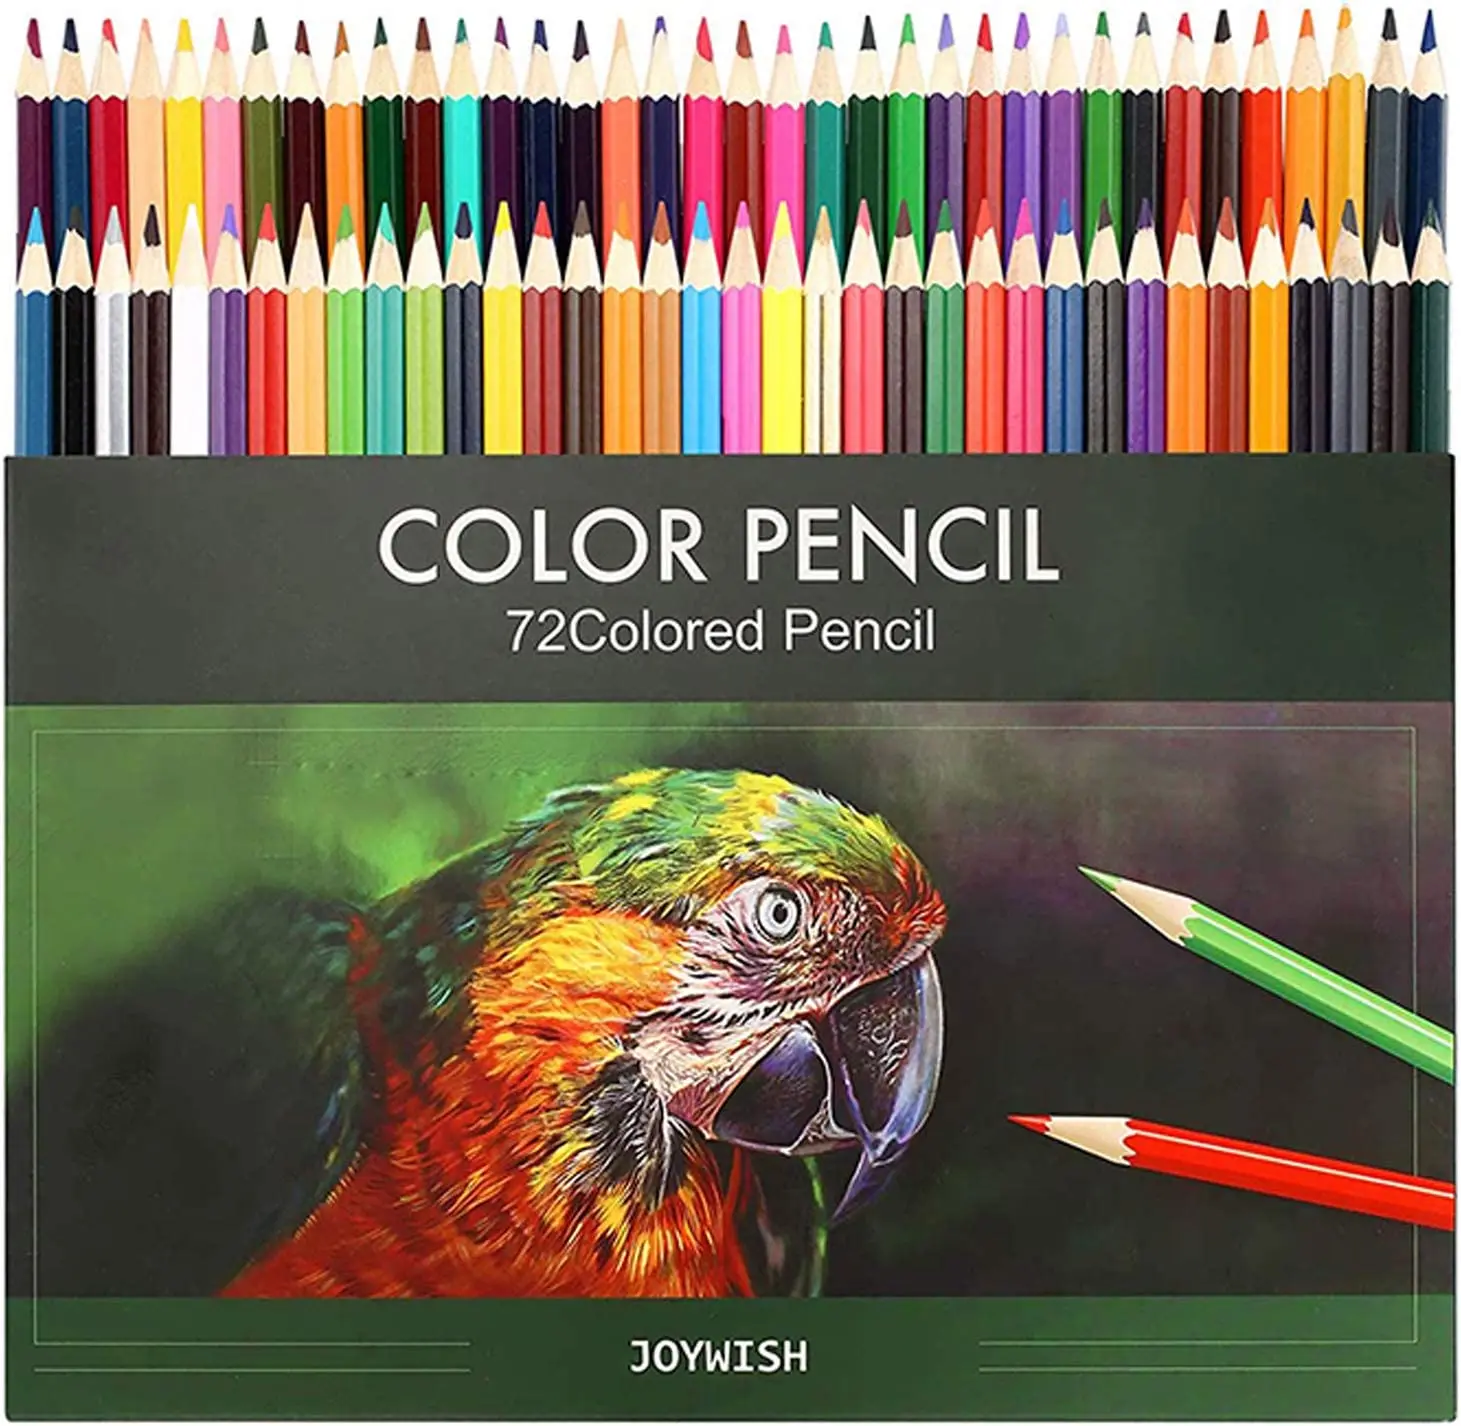 

Цветной карандаш премиум-класса для профессионального искусства с карандашами для взрослых 72 книжных цветных ярких комплекта